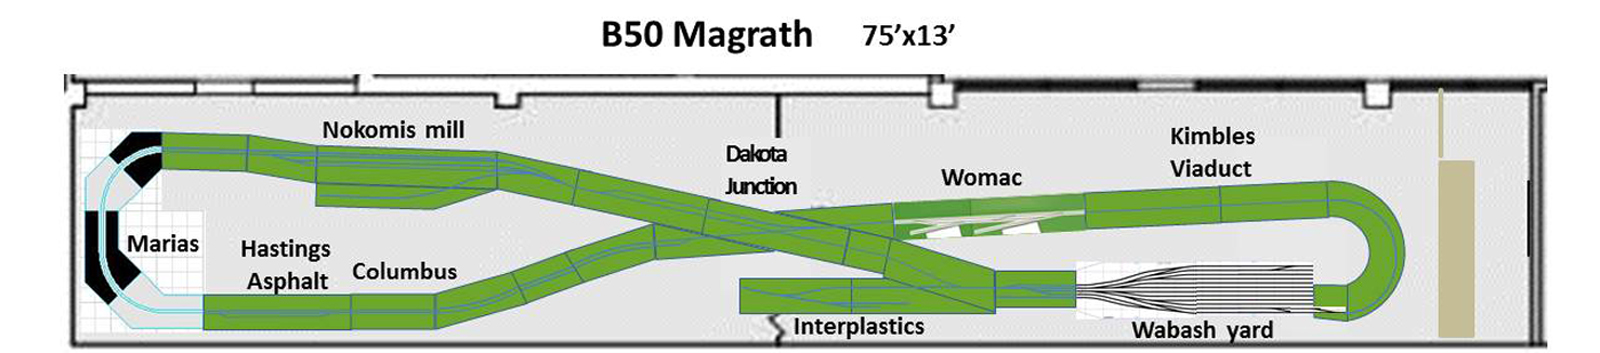 B50 Magrath layout